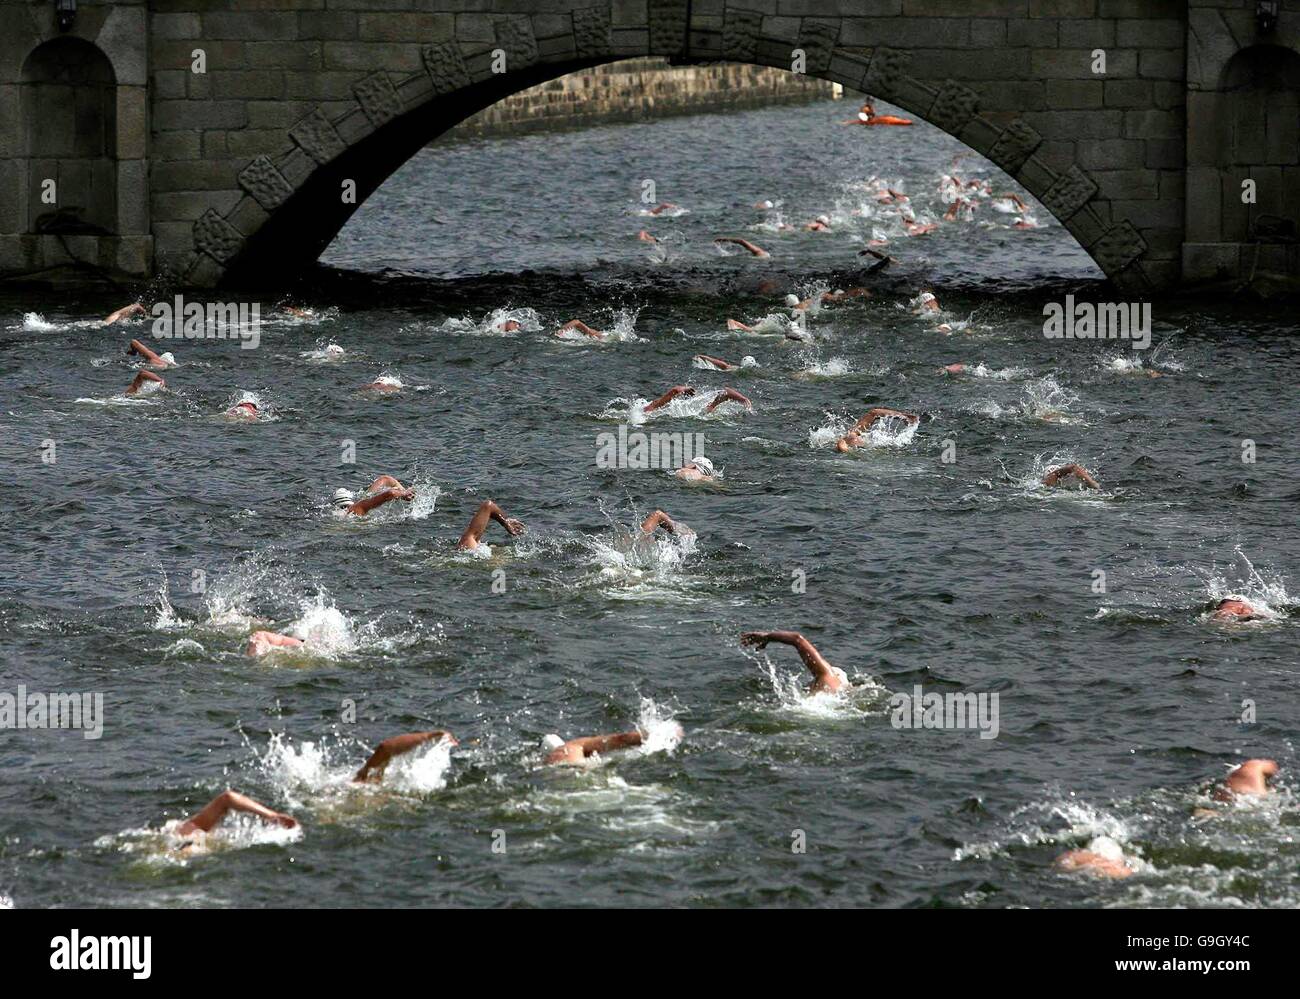 Los competidores que participan en el 86º curso anual del río Liffey nadan hoy en Dublín. Foto de stock